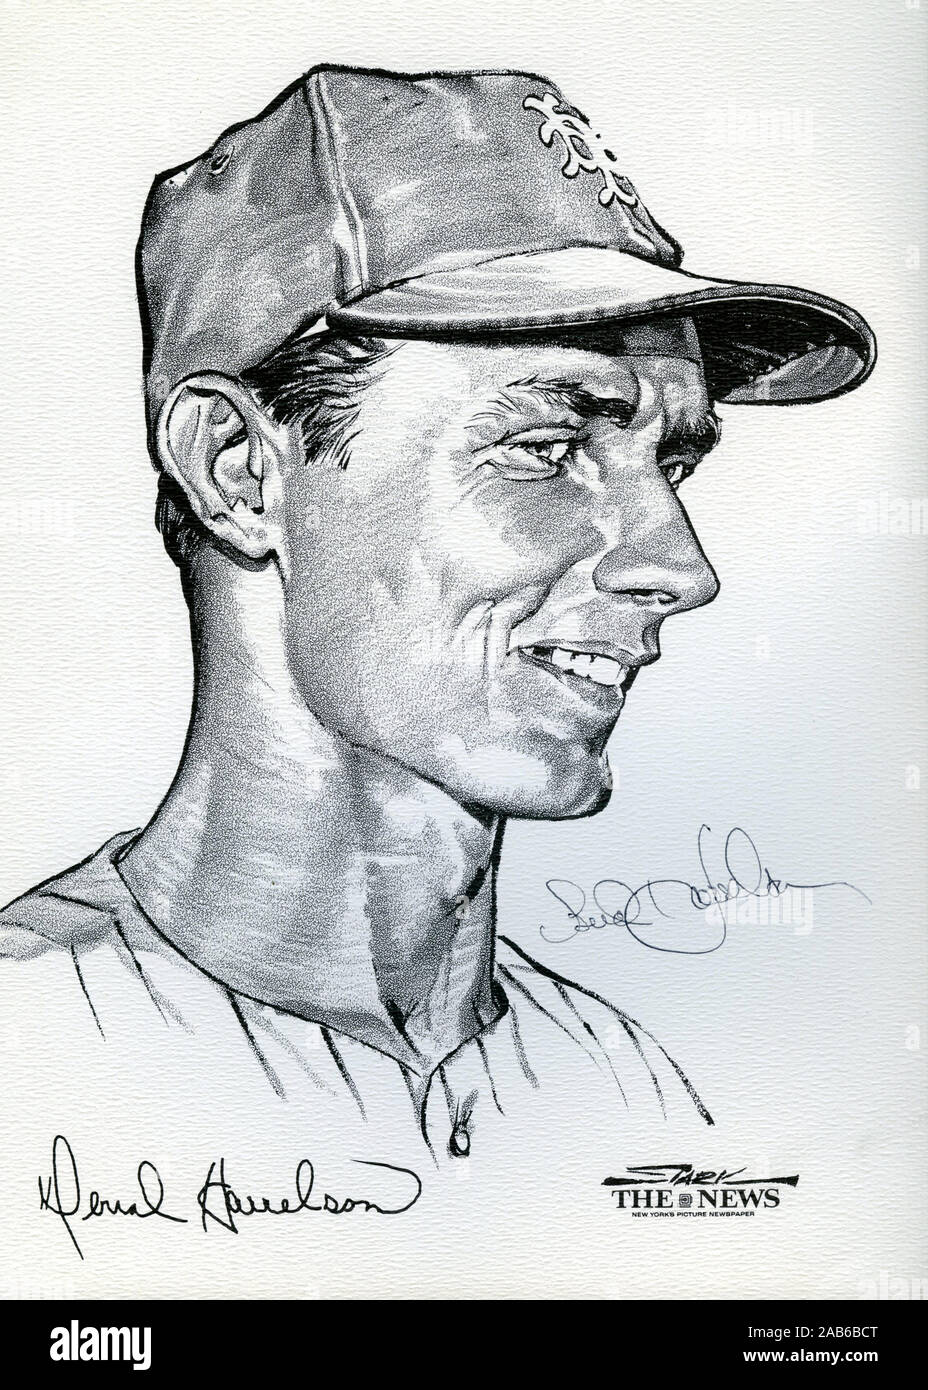 Portrait de New York Mets dvd Bud Harrelson du miracle 1969 Mets équipe qui a remporté le World Series by artist Stark et publié comme un portefeuille de souvenirs par la nouvelle de New York. Banque D'Images